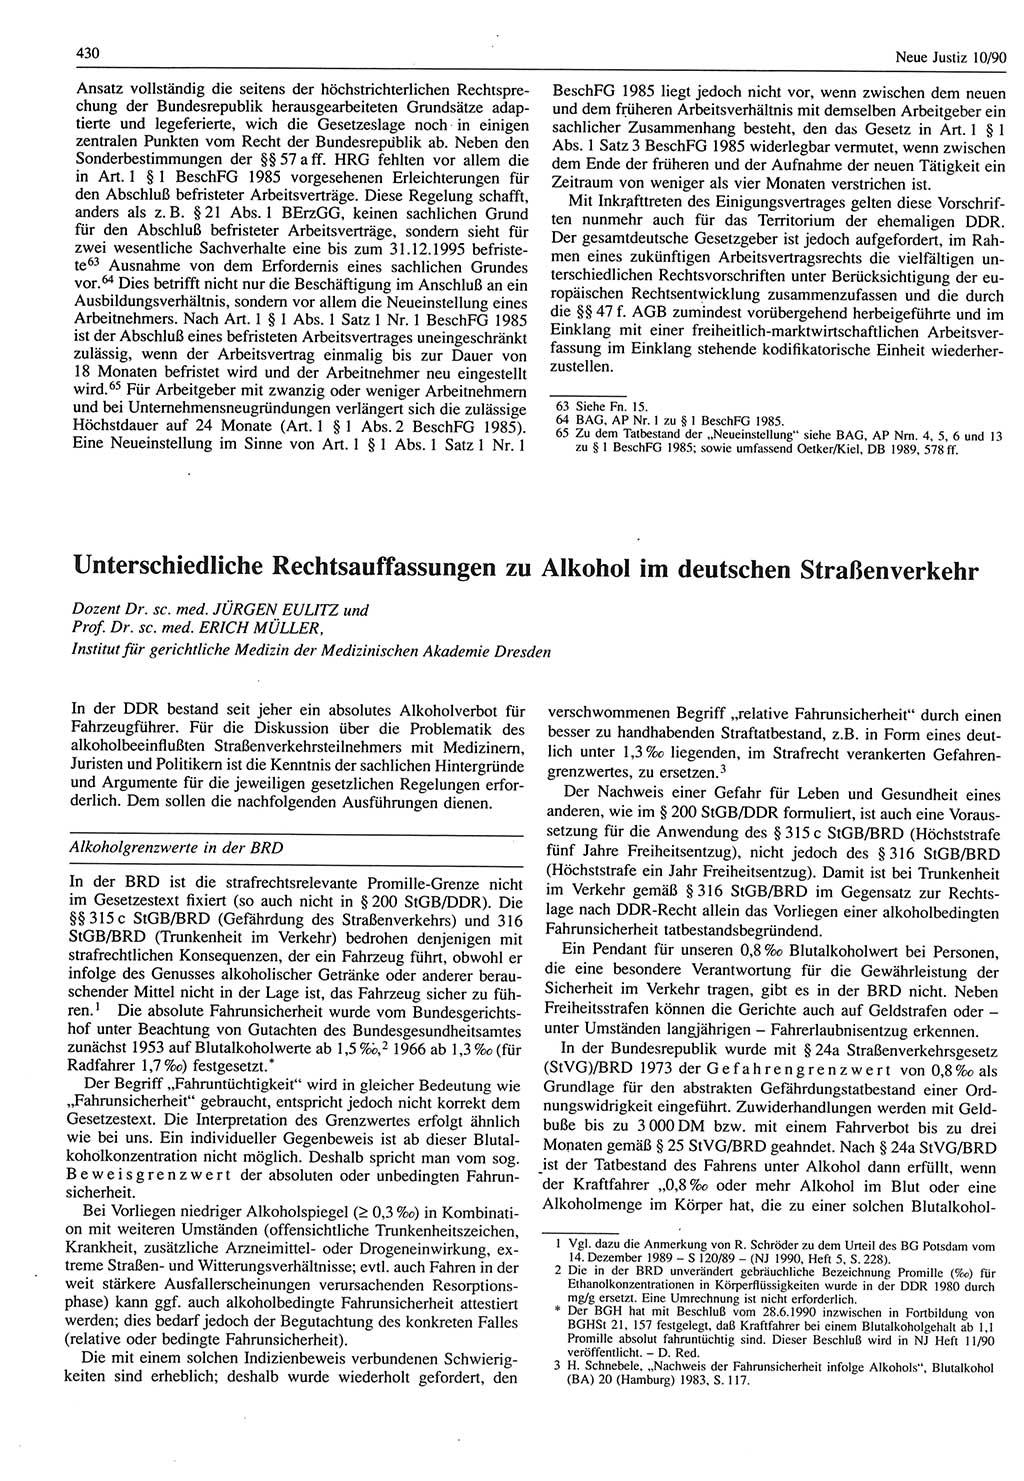 Neue Justiz (NJ), Zeitschrift für Rechtsetzung und Rechtsanwendung [Deutsche Demokratische Republik (DDR)], 44. Jahrgang 1990, Seite 430 (NJ DDR 1990, S. 430)